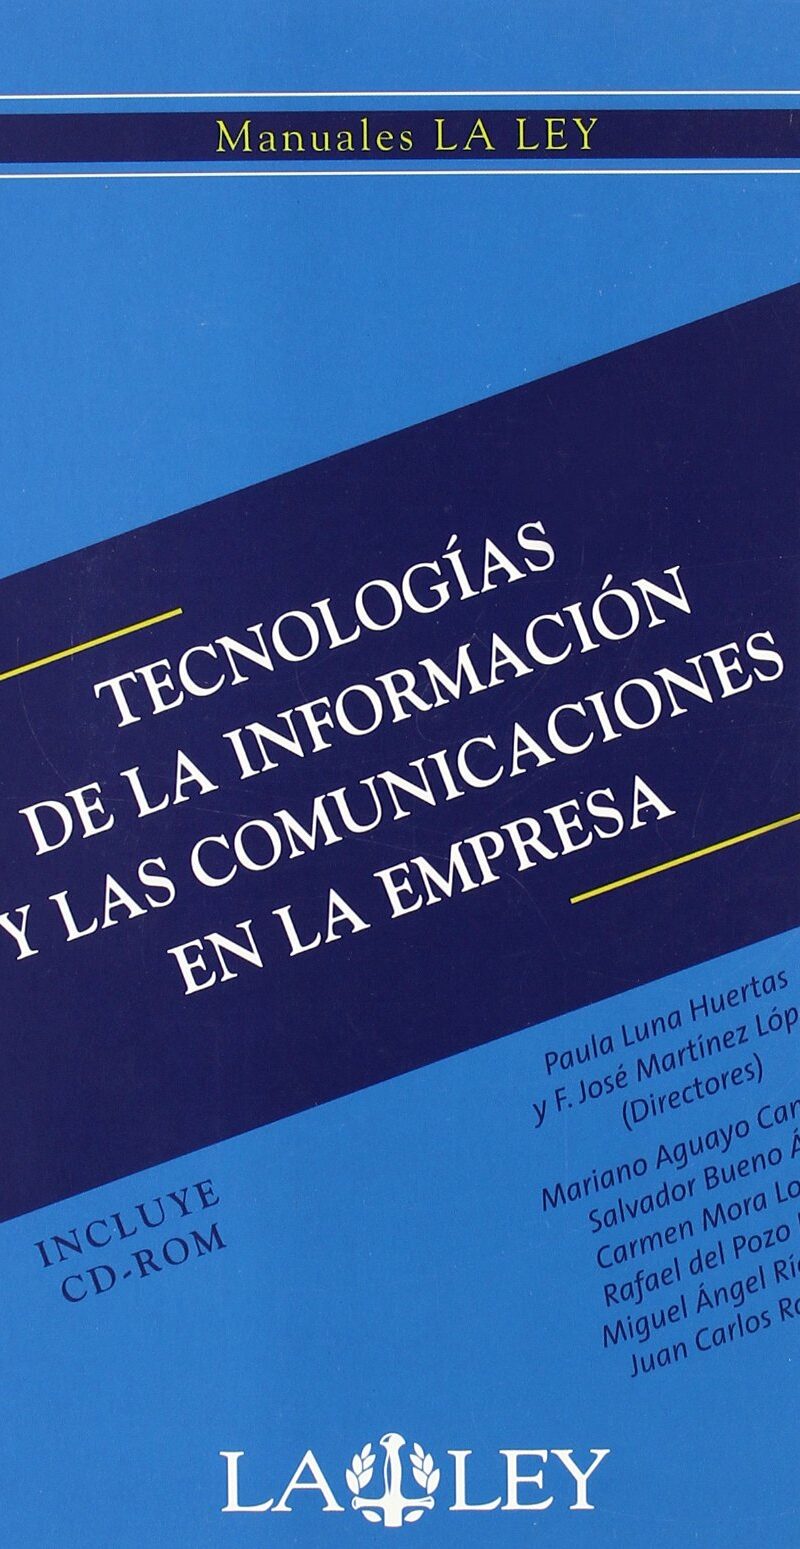 TECNOLOGIAS DE LA INFORMACION Y LAS COMUNICACIONES EN LA EMPRESA - LA LEY